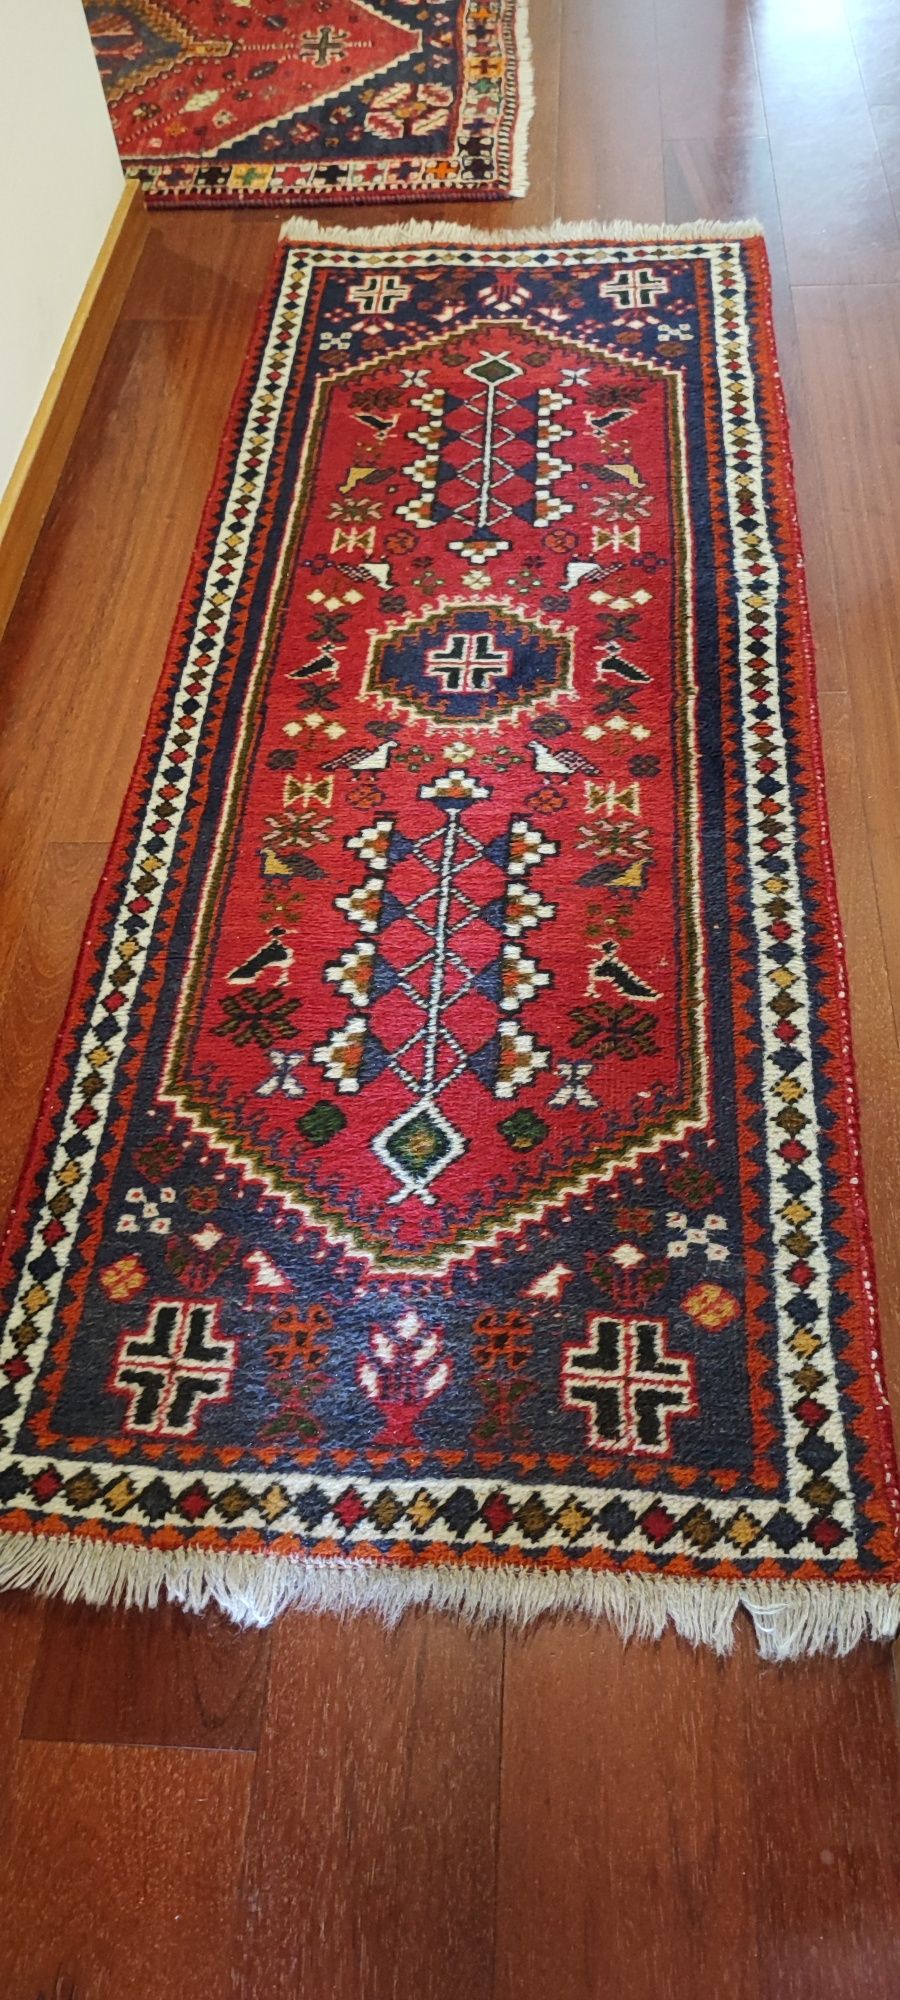 Carpete persa - como nova